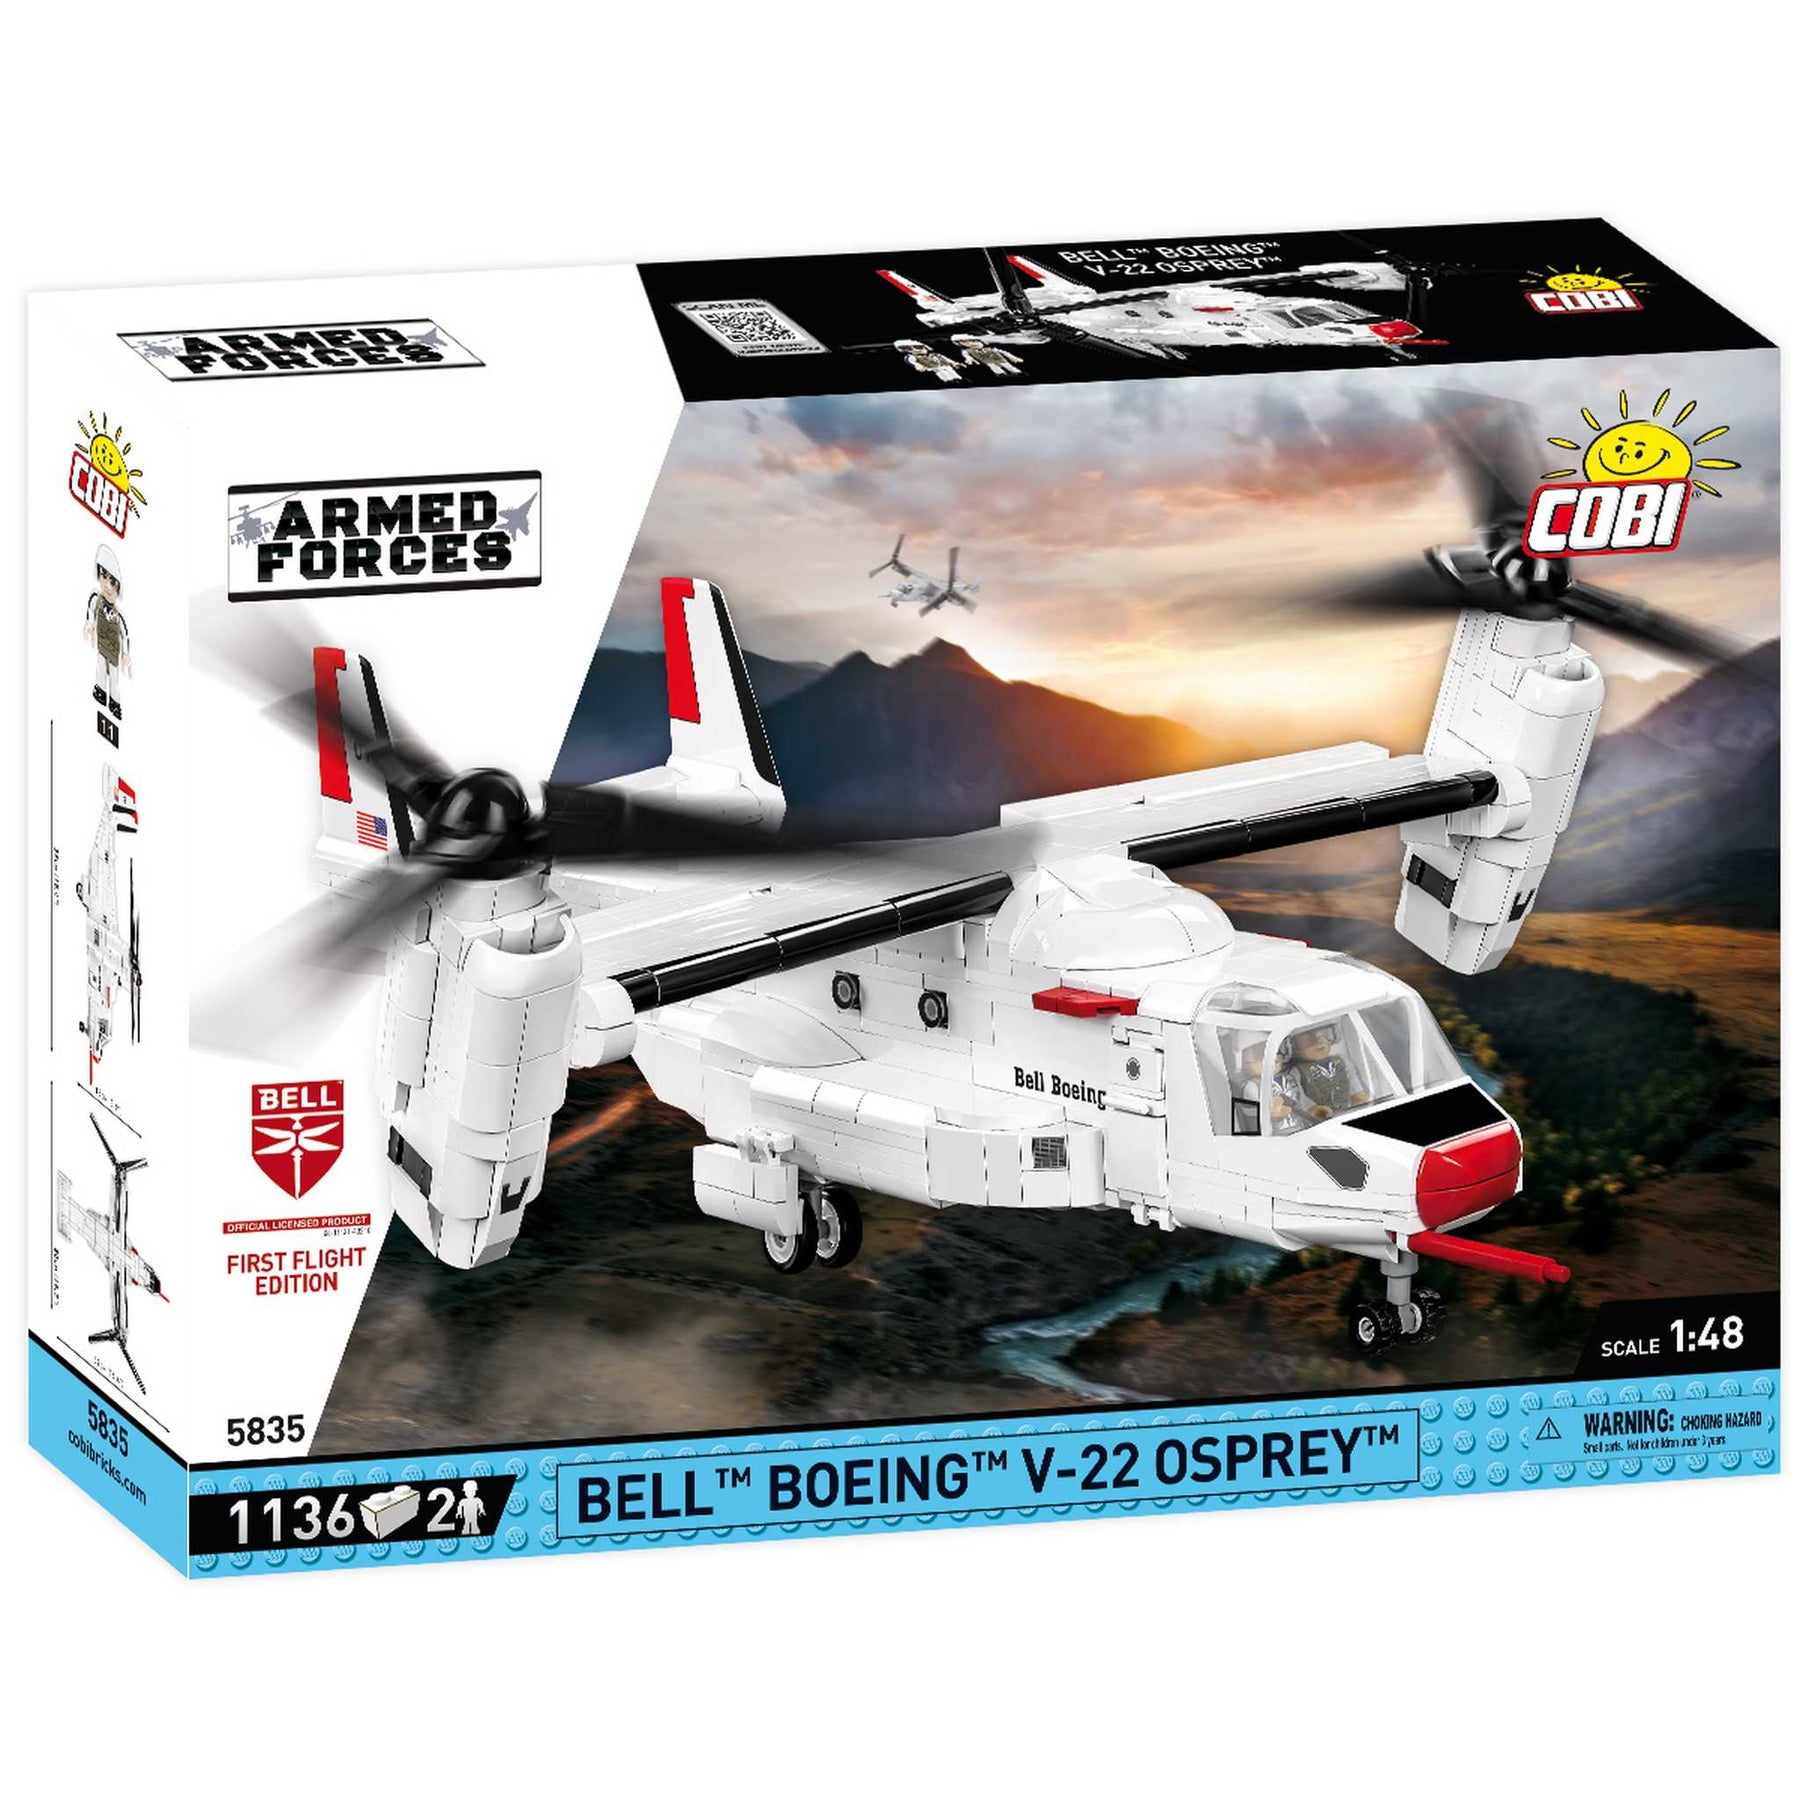 5835 - Bell Boeing V-22 Osprey (Cobi)